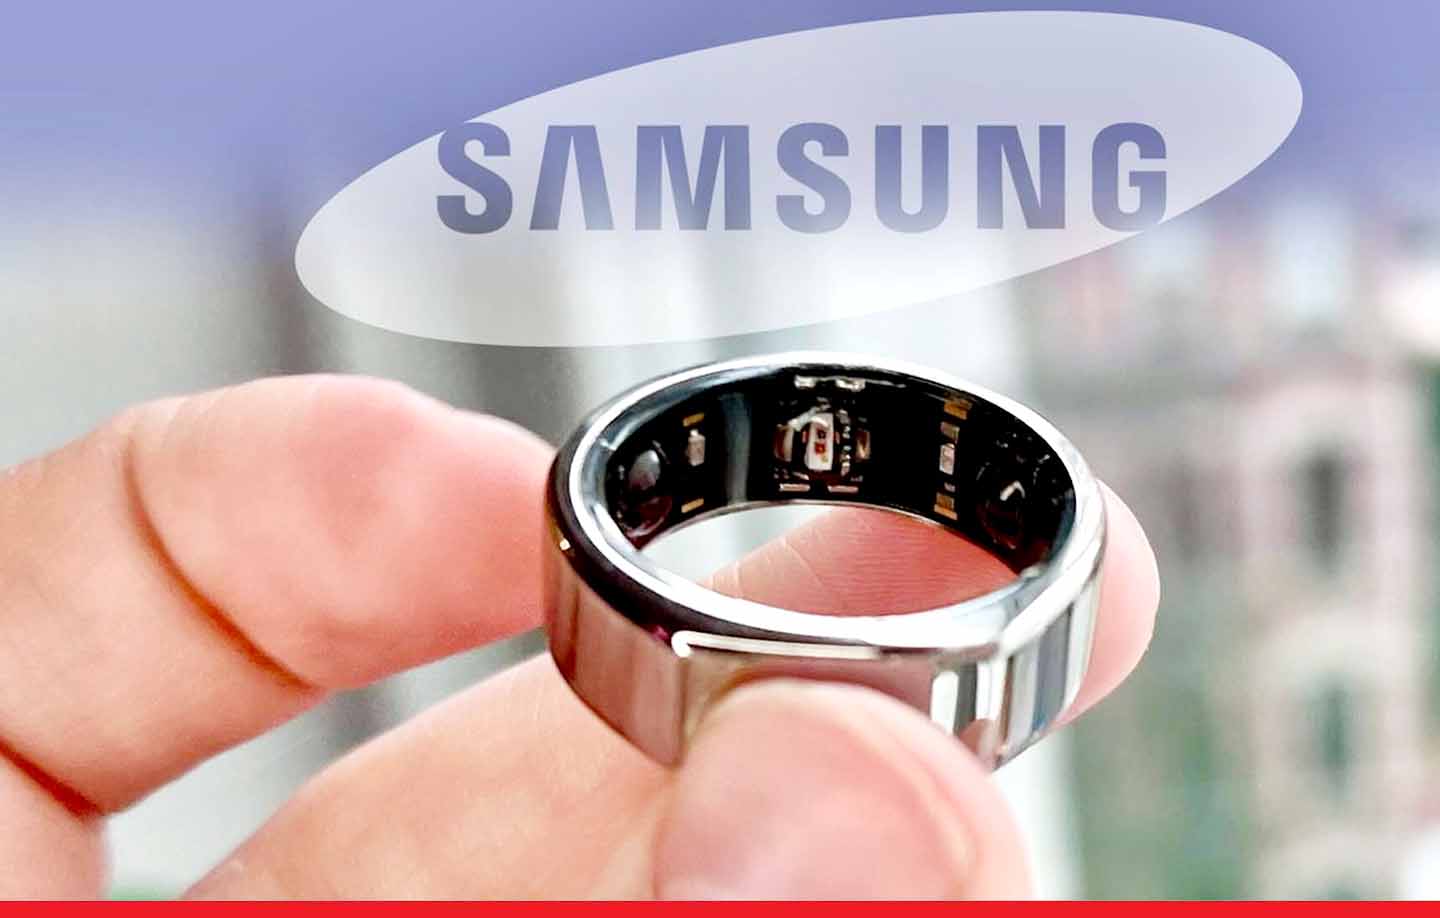 Samsung ने पेश की अपनी पहली स्मार्ट रिंग, दिल का रखेगी ध्यान